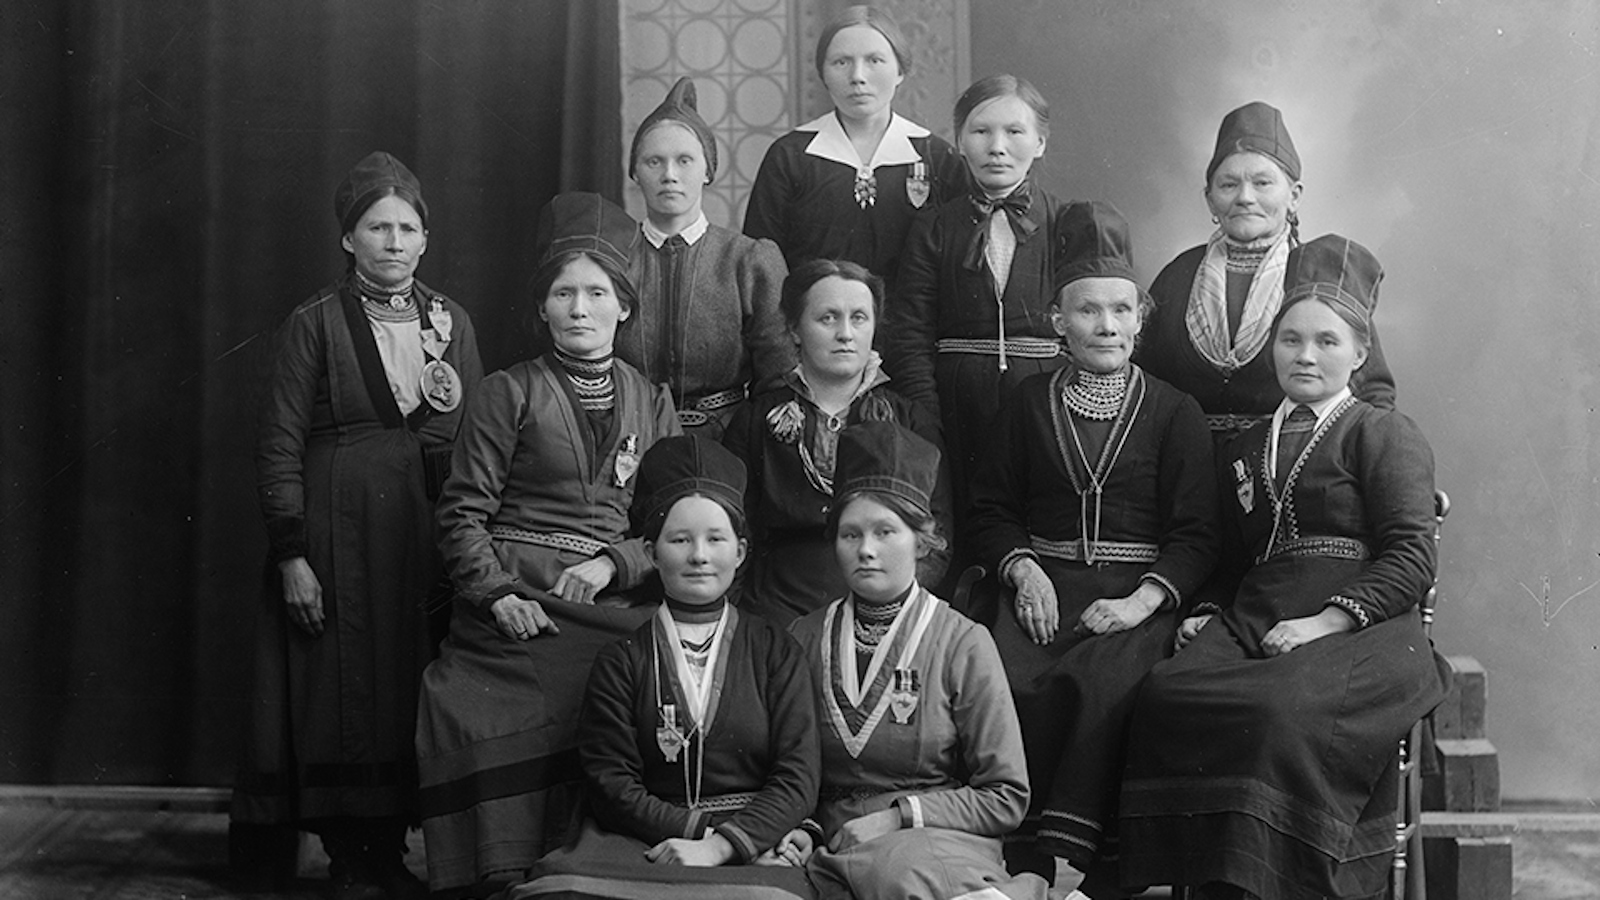 Kuvassa on Trondheimissa saamelaisen naisyhdityksen jäseniä yhteiskuvassa. Kuva on musta-valkoinen.